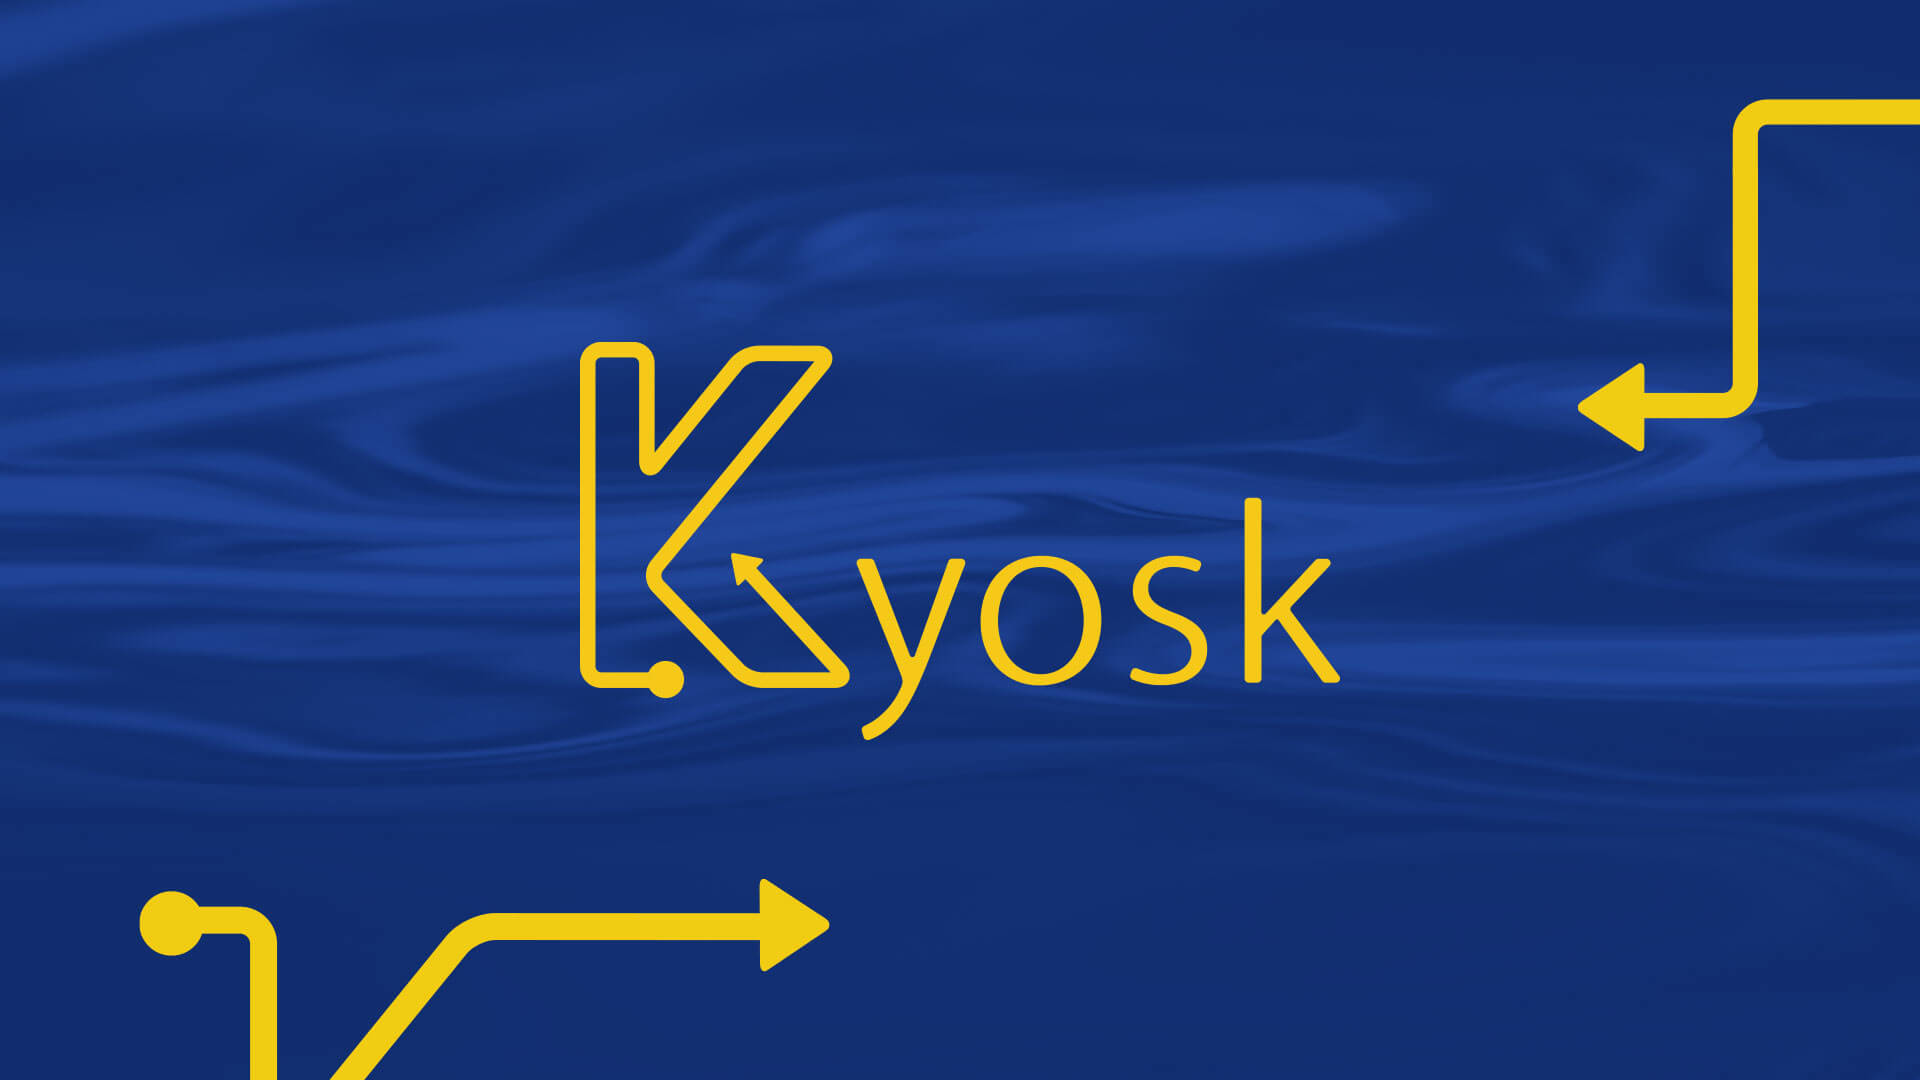 Kyosk